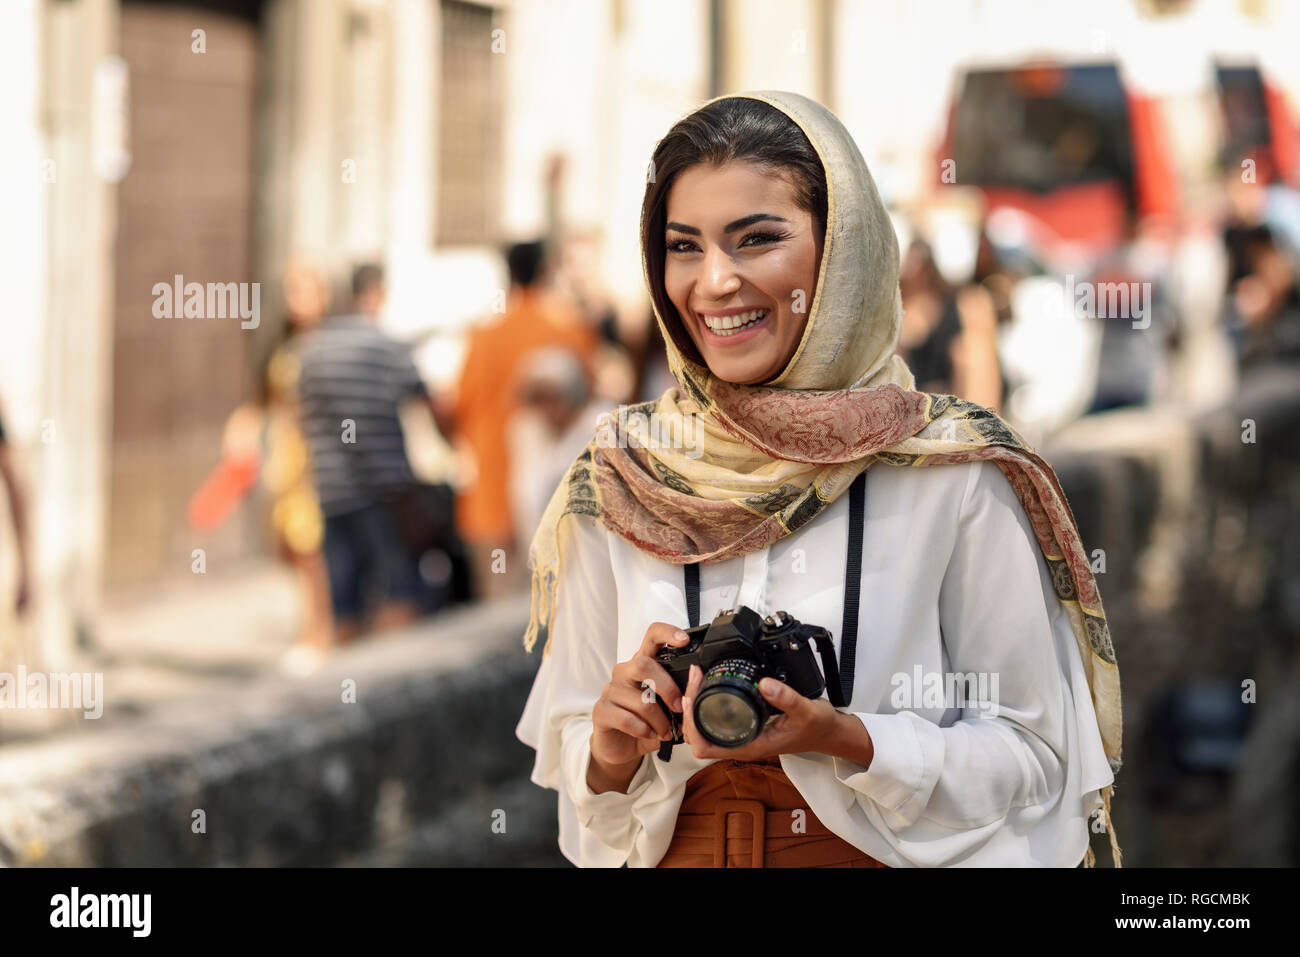 L'Espagne, Grenade, les jeunes touristes Arabes femme portant le hijab, à l'aide d'appareil photo pendant la visite de la ville Banque D'Images